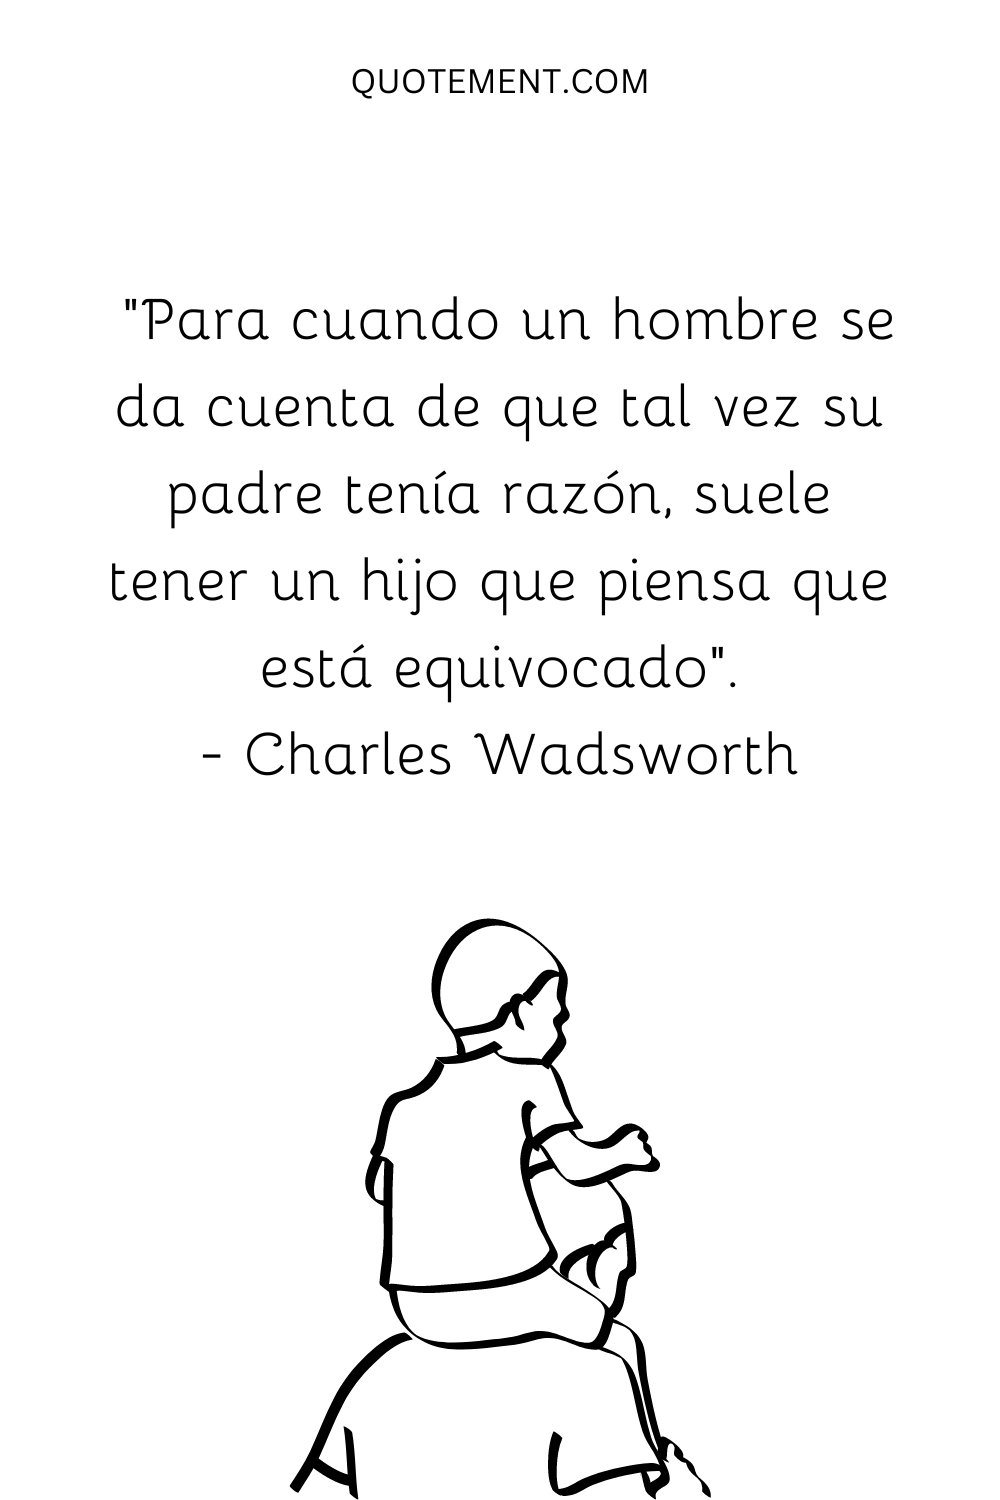 "Para cuando un hombre se da cuenta de que quizá su padre tenía razón, suele tener un hijo que piensa que está equivocado". - Charles Wadsworth